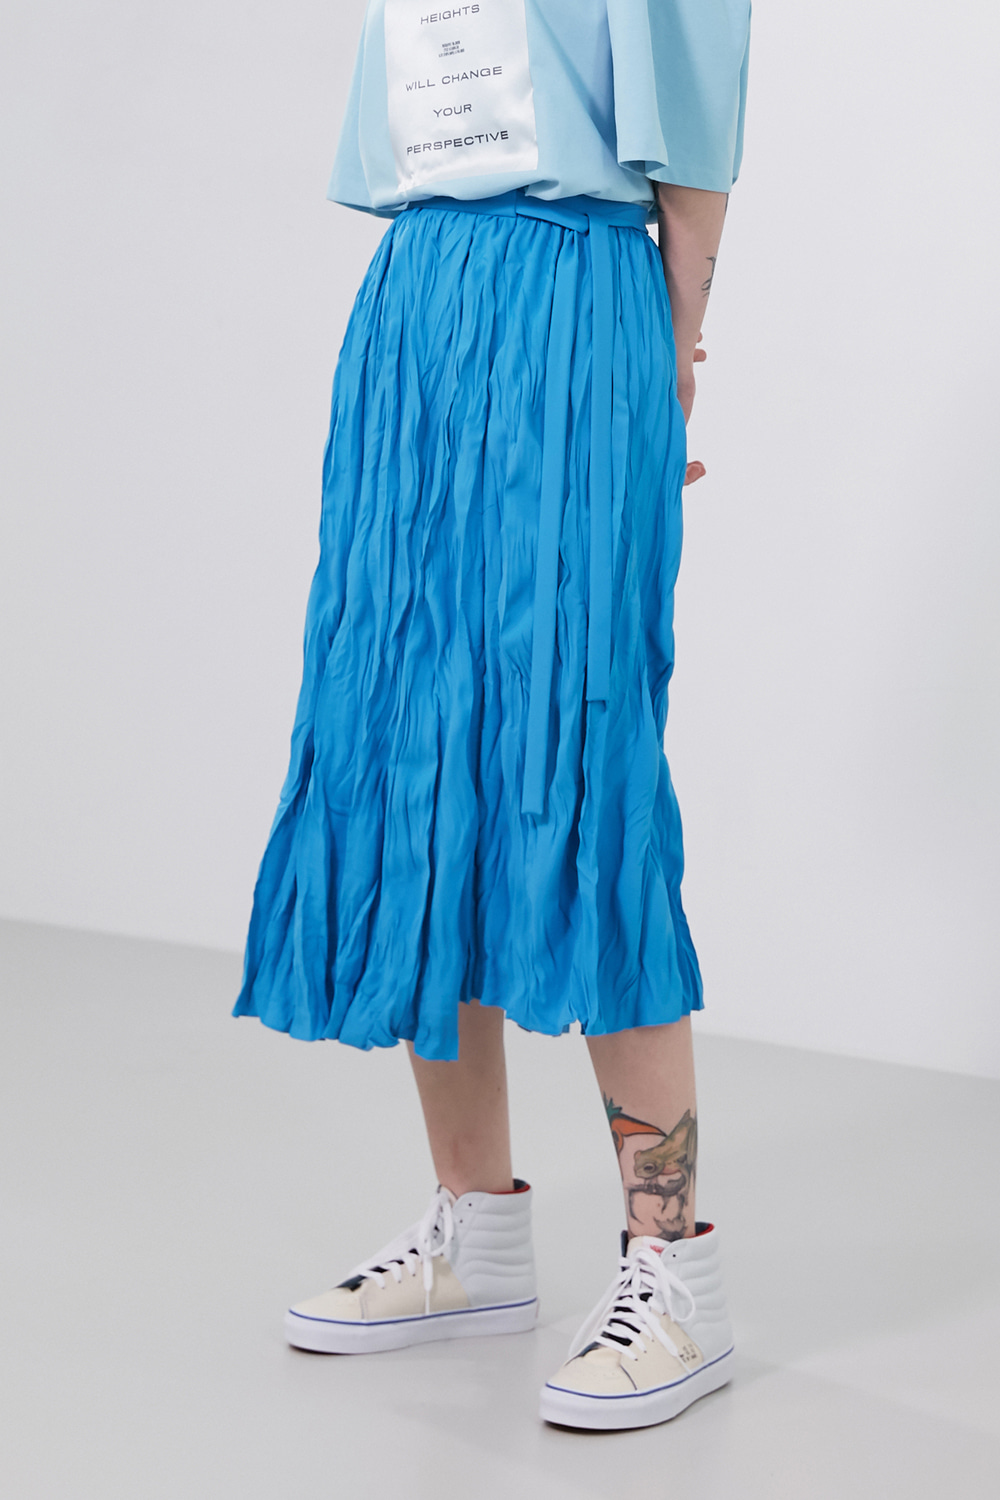 Skirt Pleats Crinkled Splash Blue / S size Only